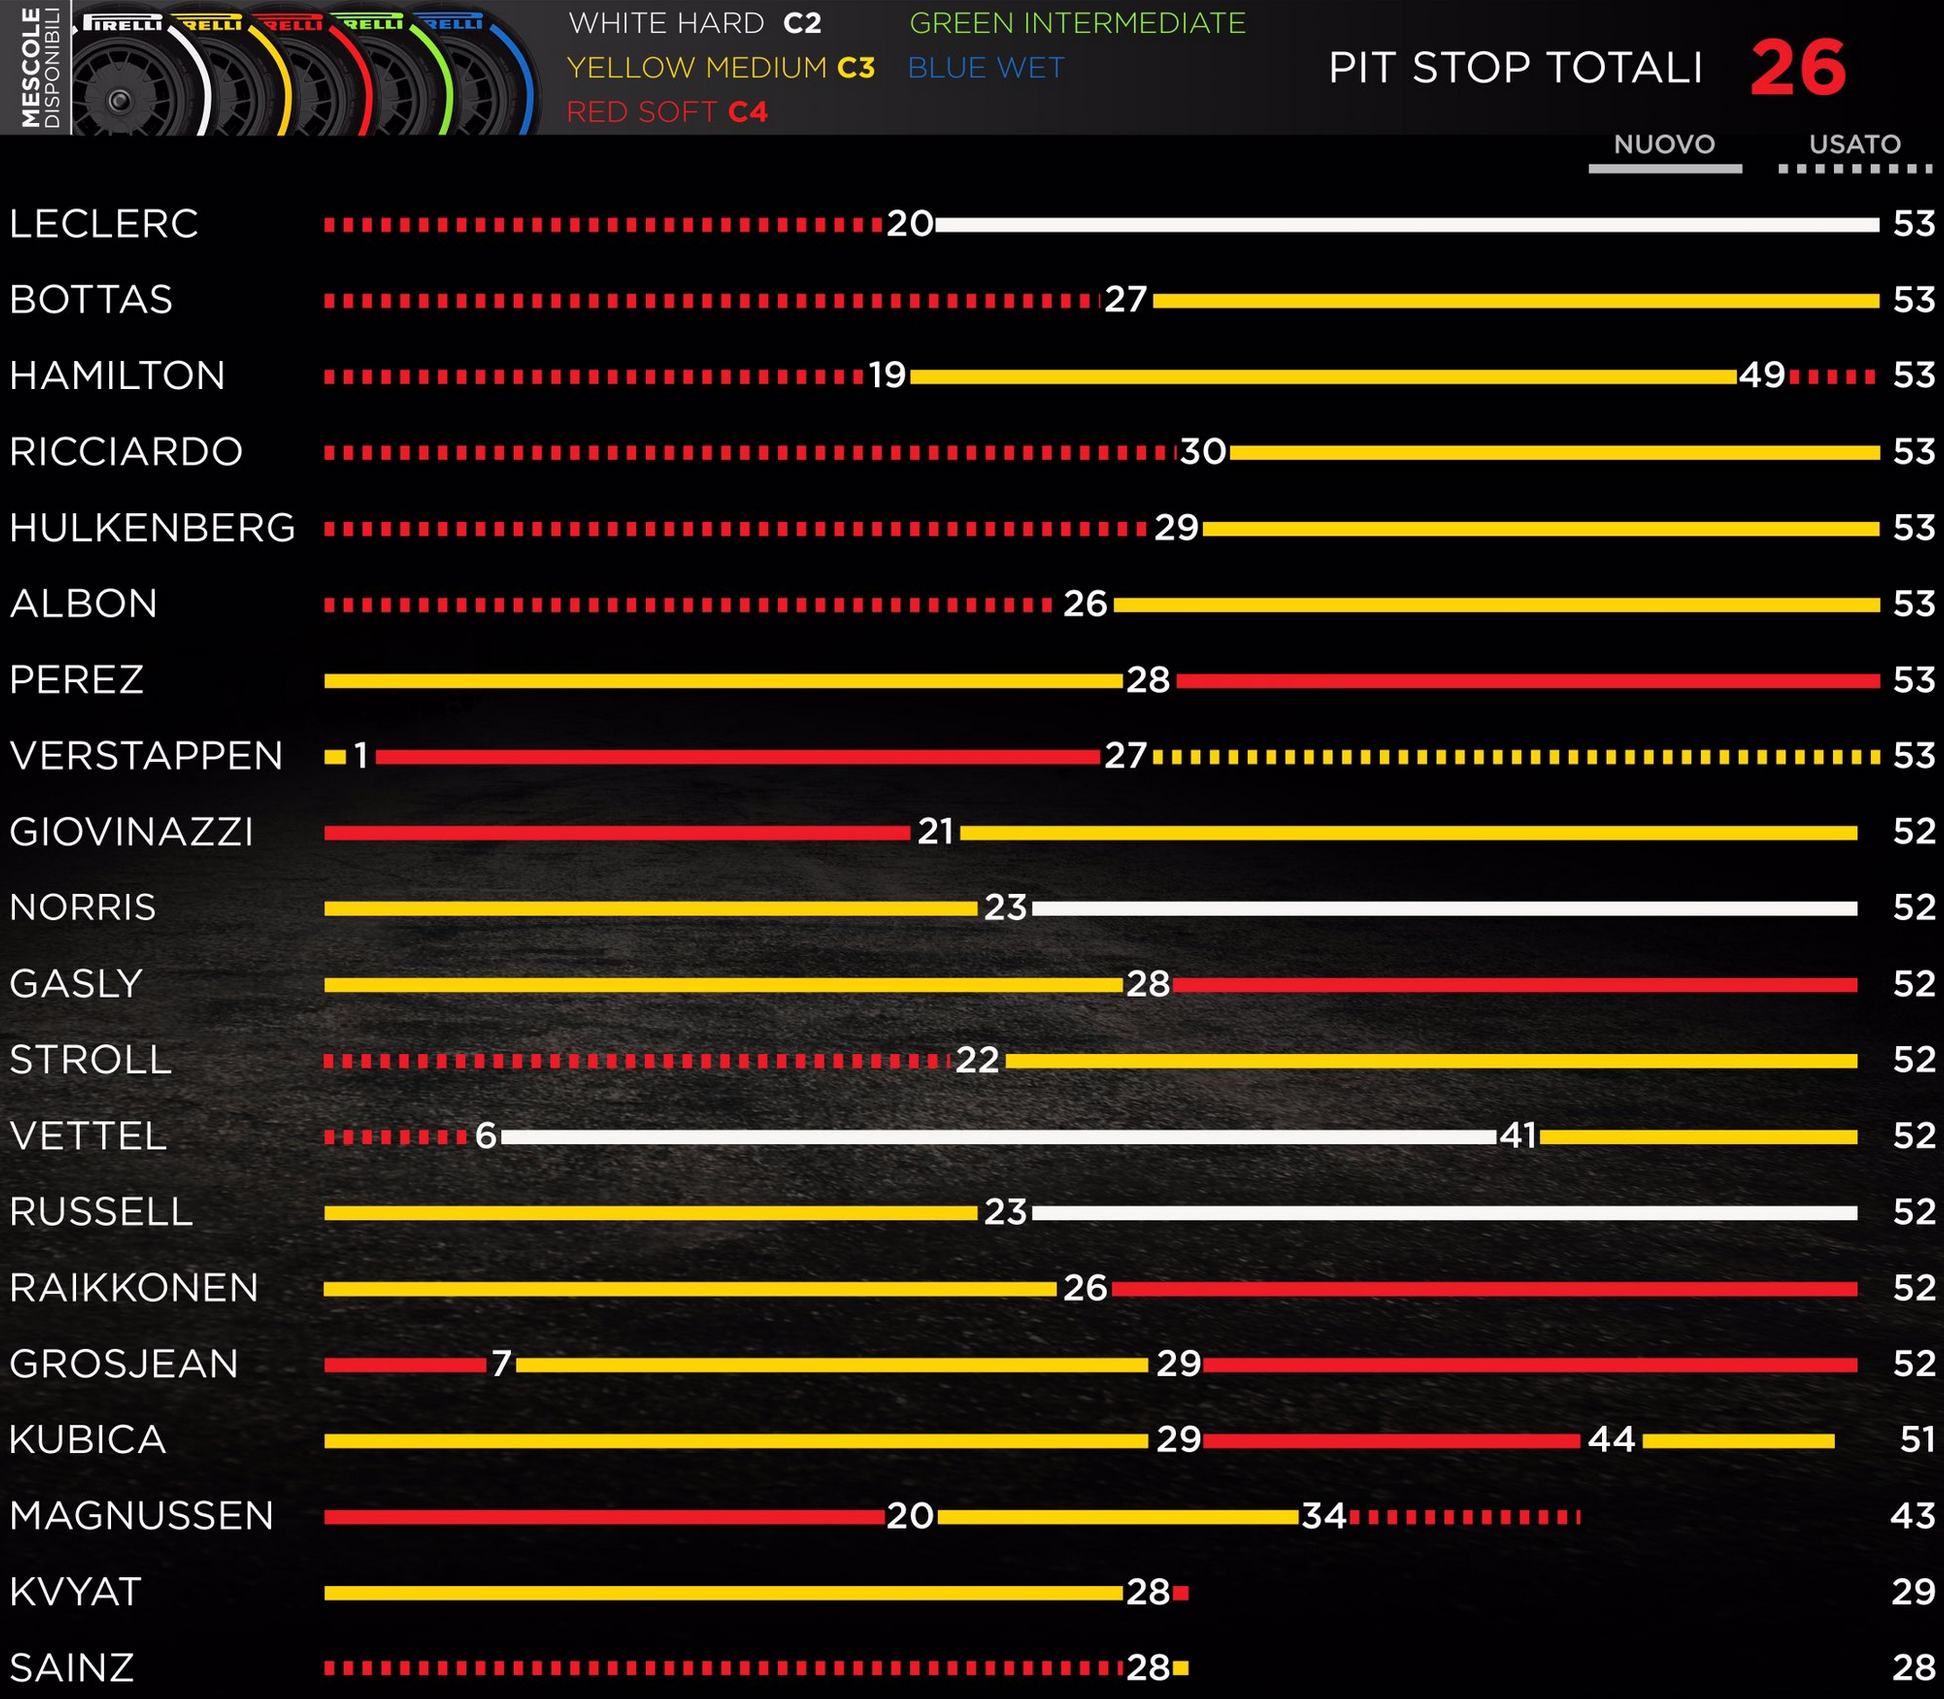 Grafický přehled pneumatikových strategií GP Itálie 2019